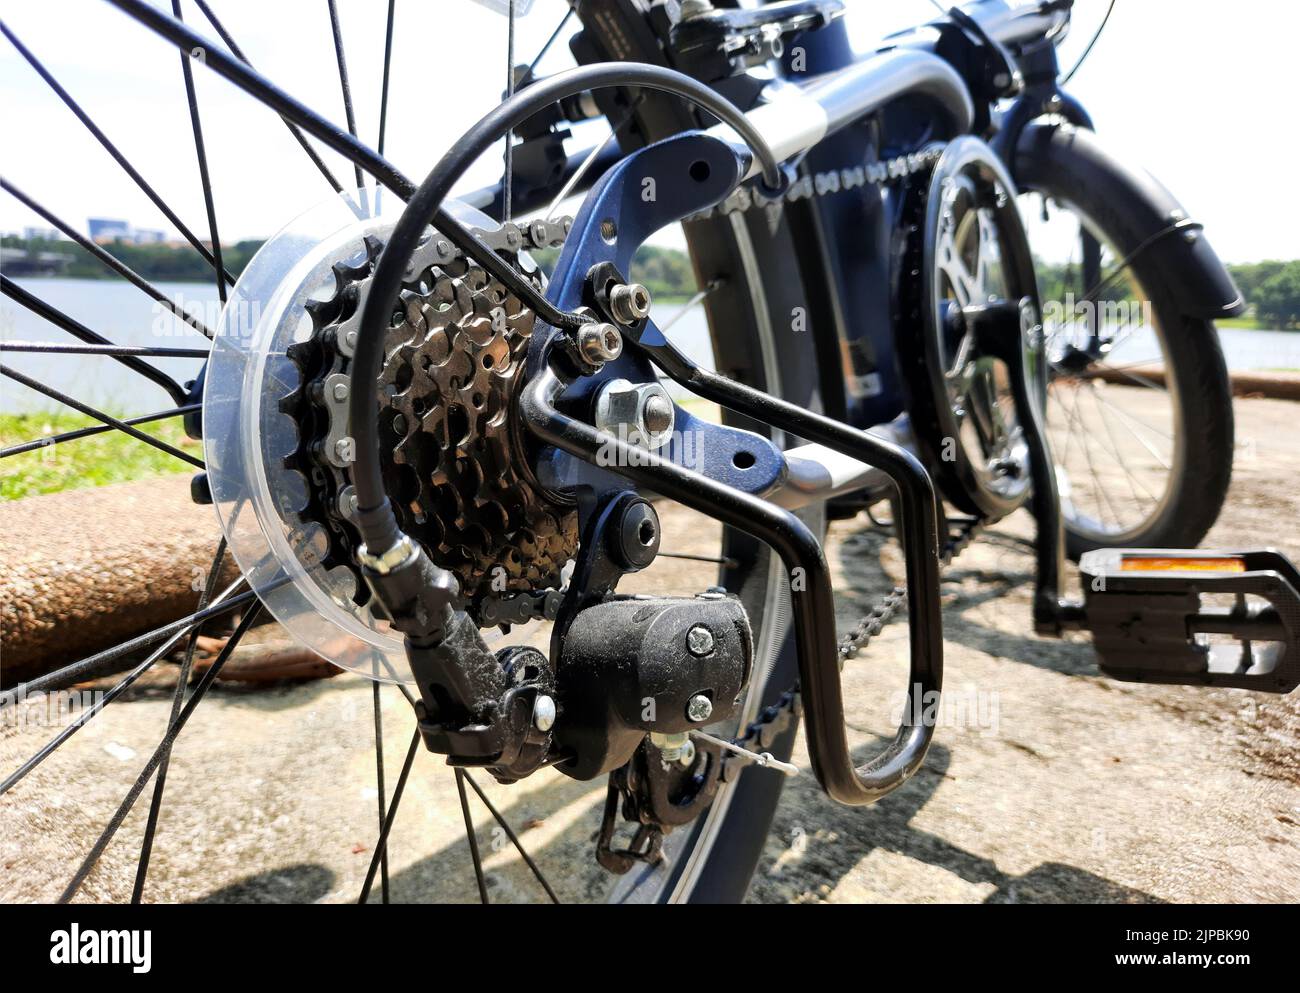 Roues d'engrenage de vélo en gros plan avec cassette d'engrenage mécanique et chaîne à l'arrière de la roue de vélo repliable Banque D'Images